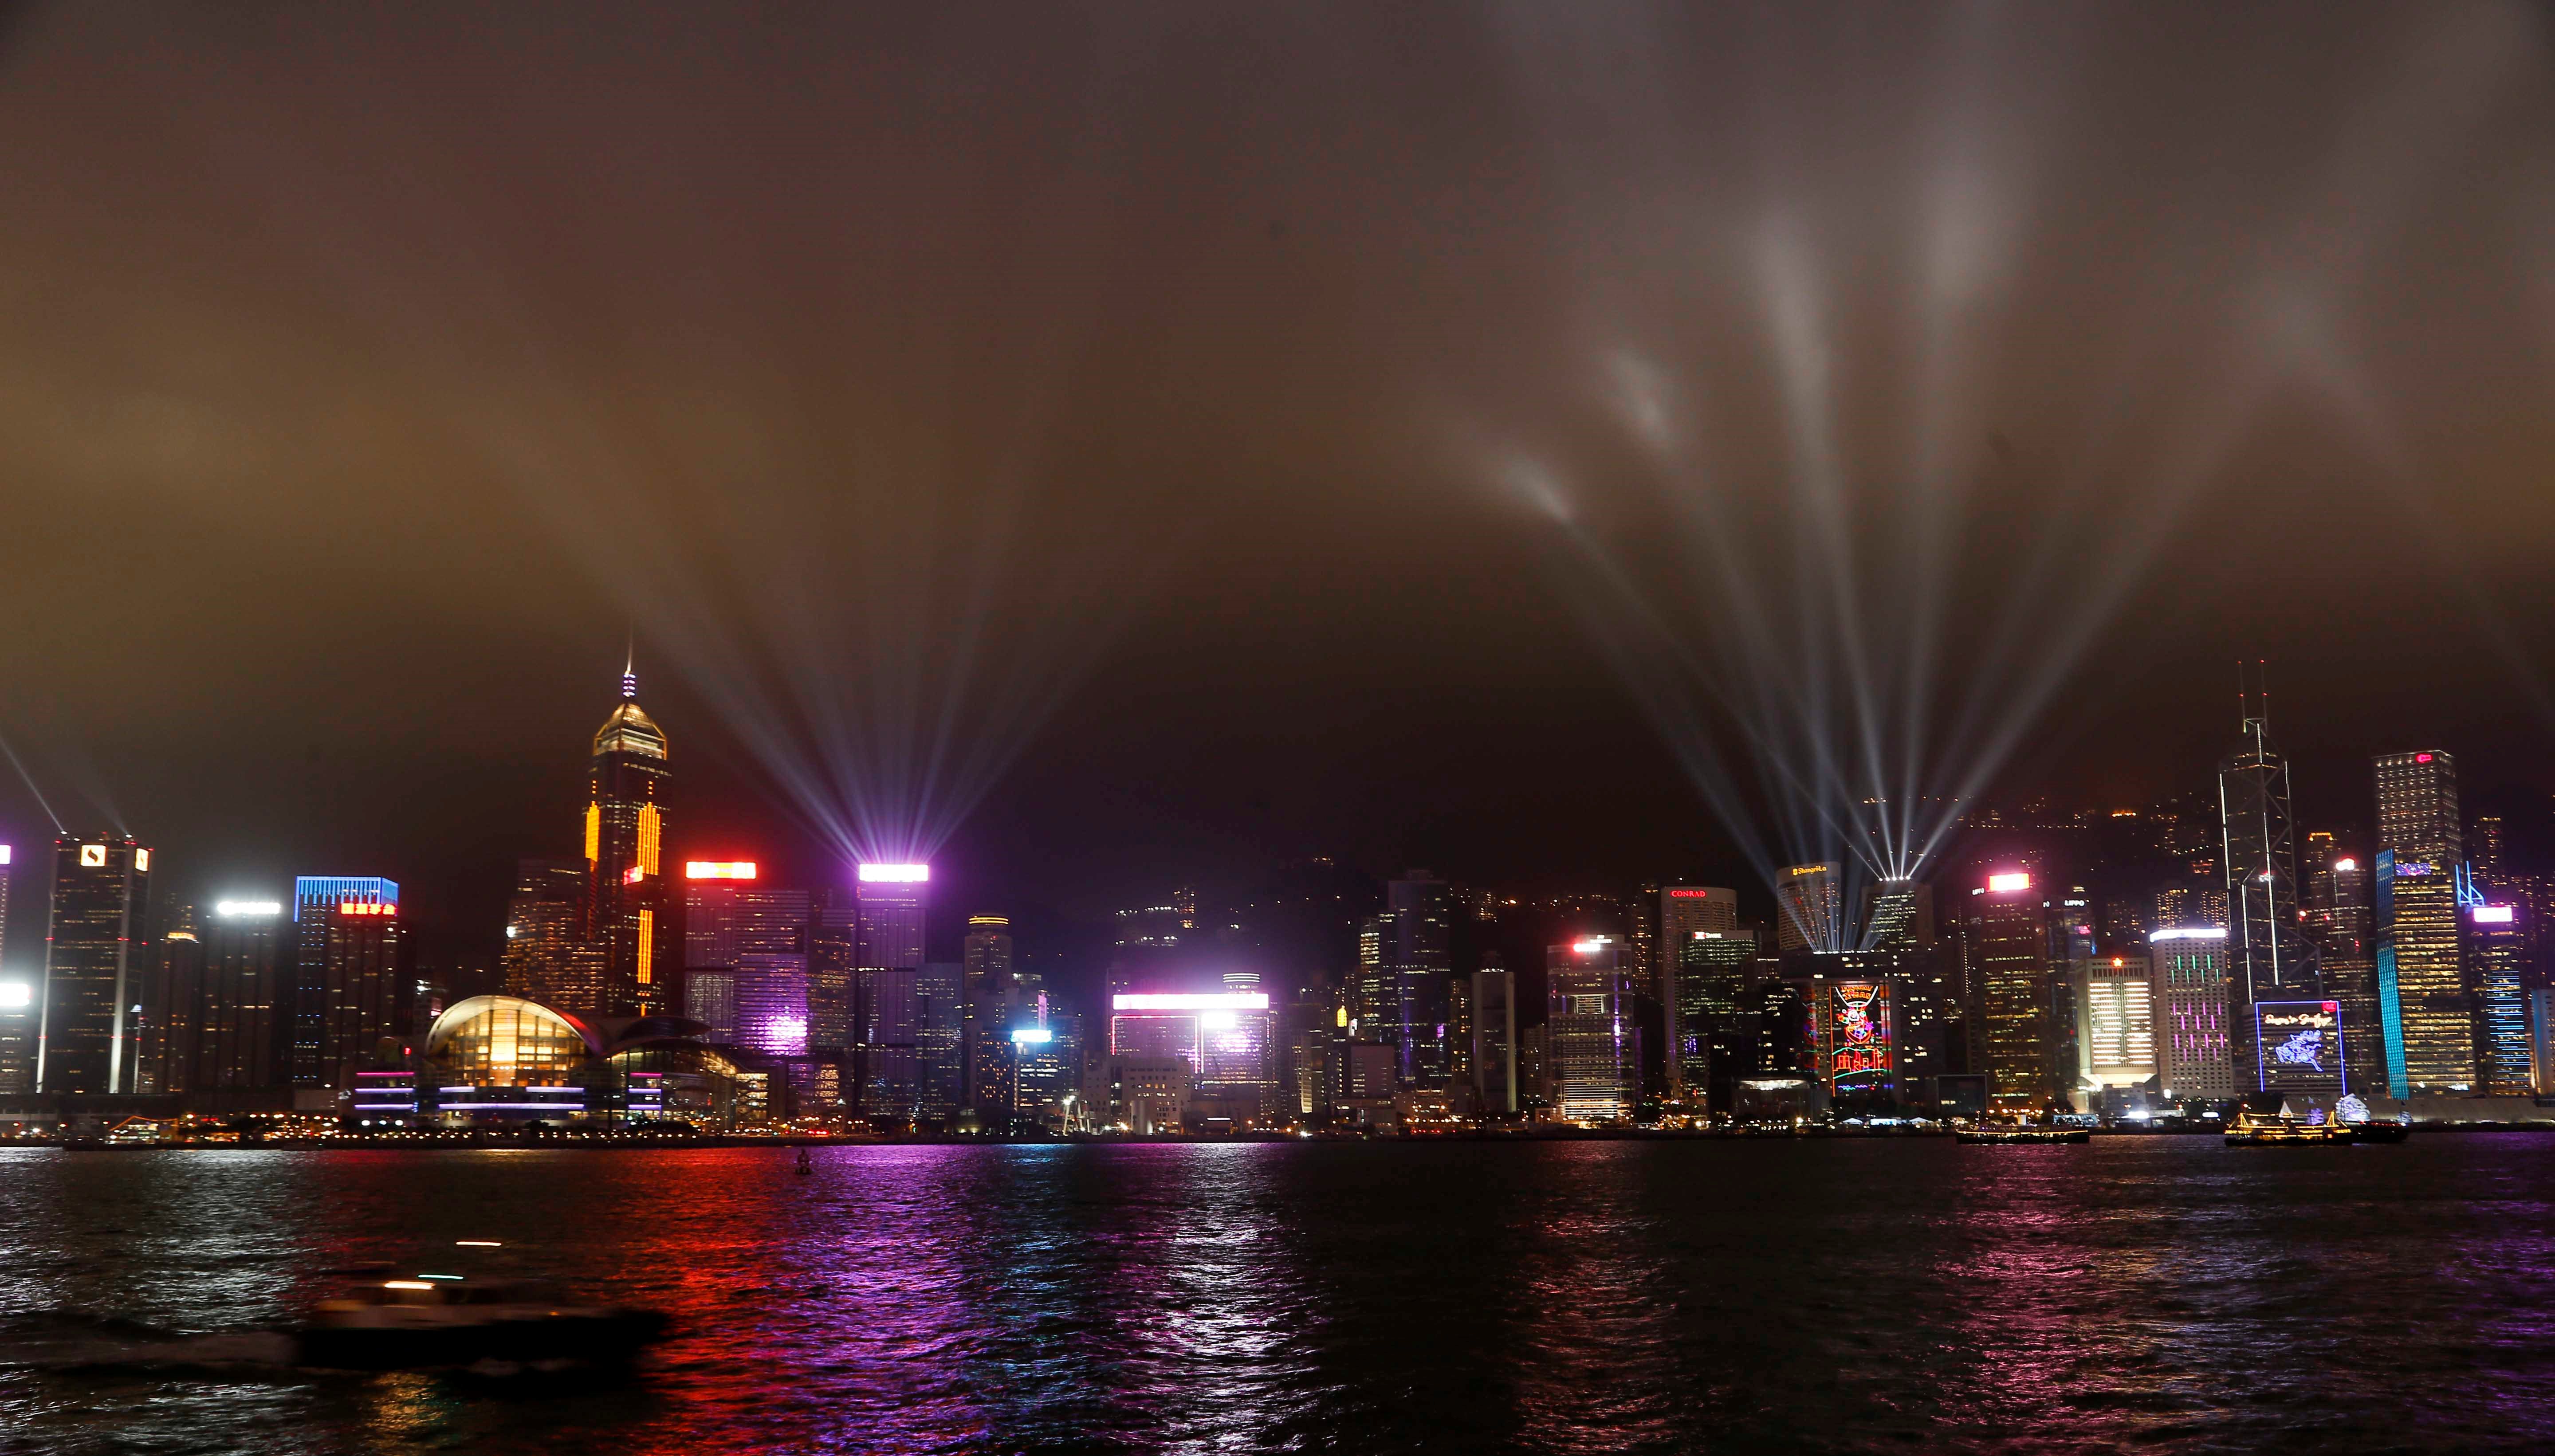 维港两岸40多幢摩天大楼一同播放耀目的灯光效果